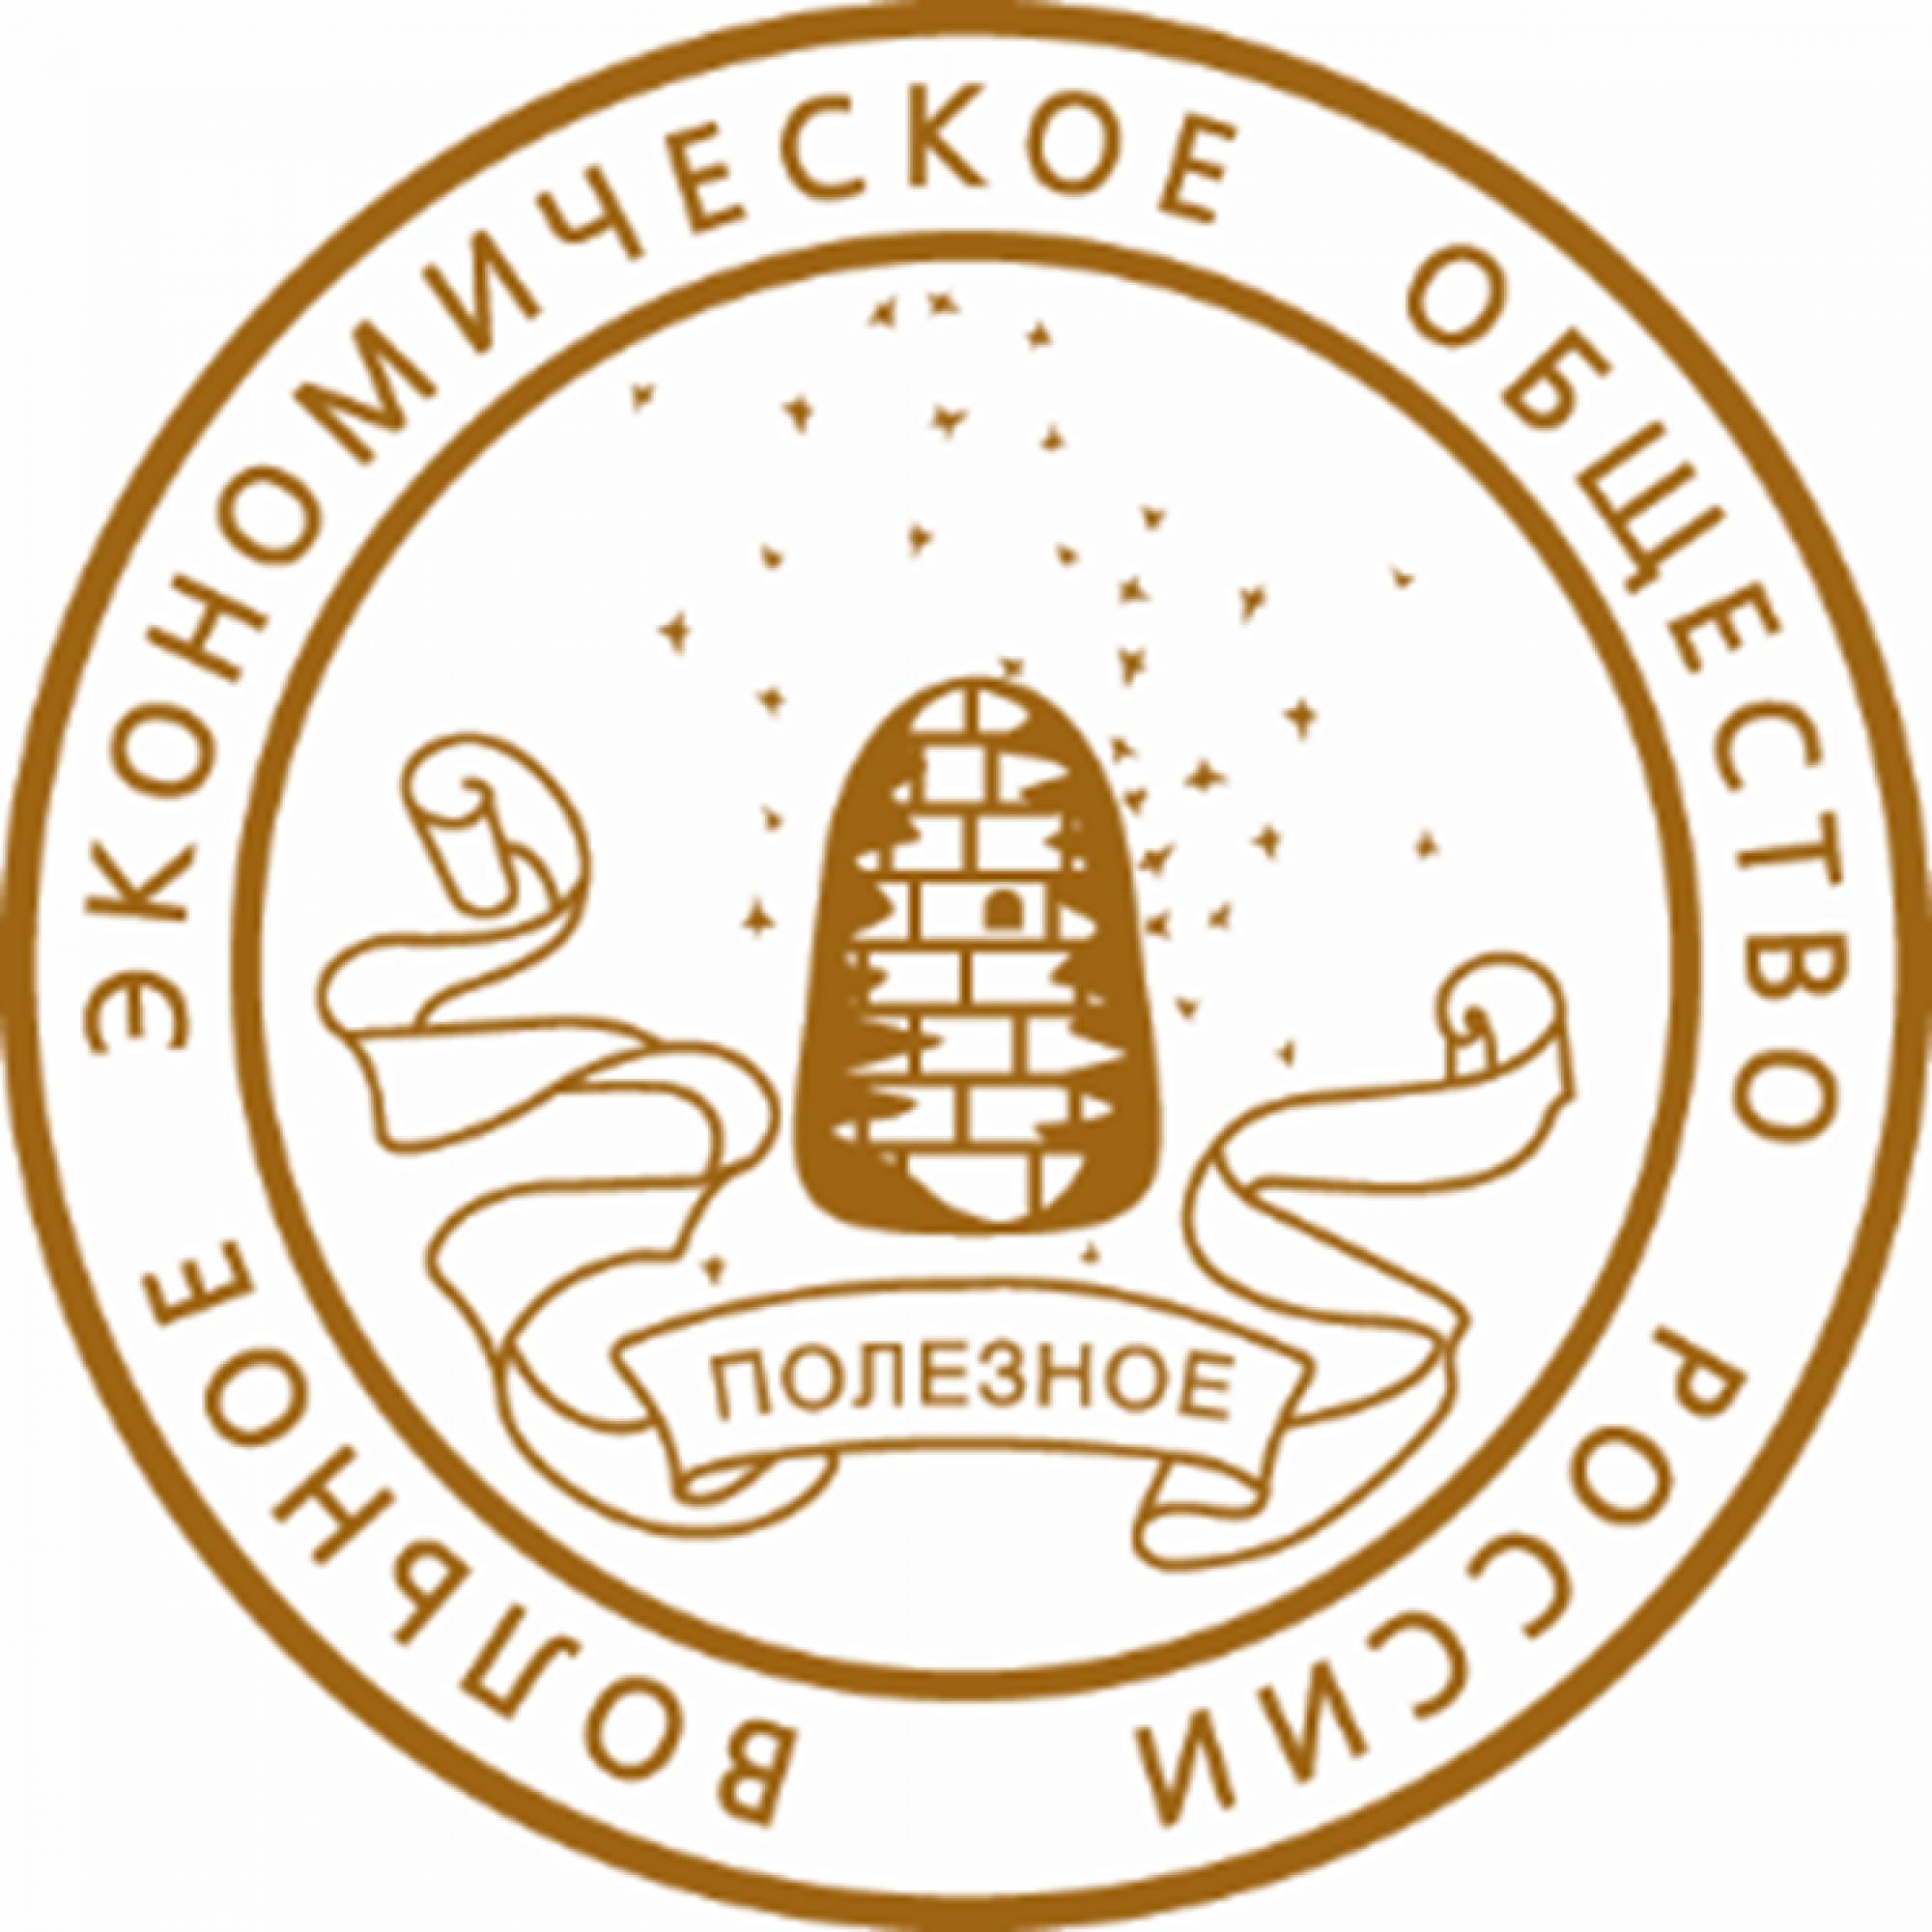 Единое экономическое общество. Вольное экономическое общество (ВЭО). Эмблема вольного экономического общества. Логотип ВЭО России. Волна экономическое общемтво.